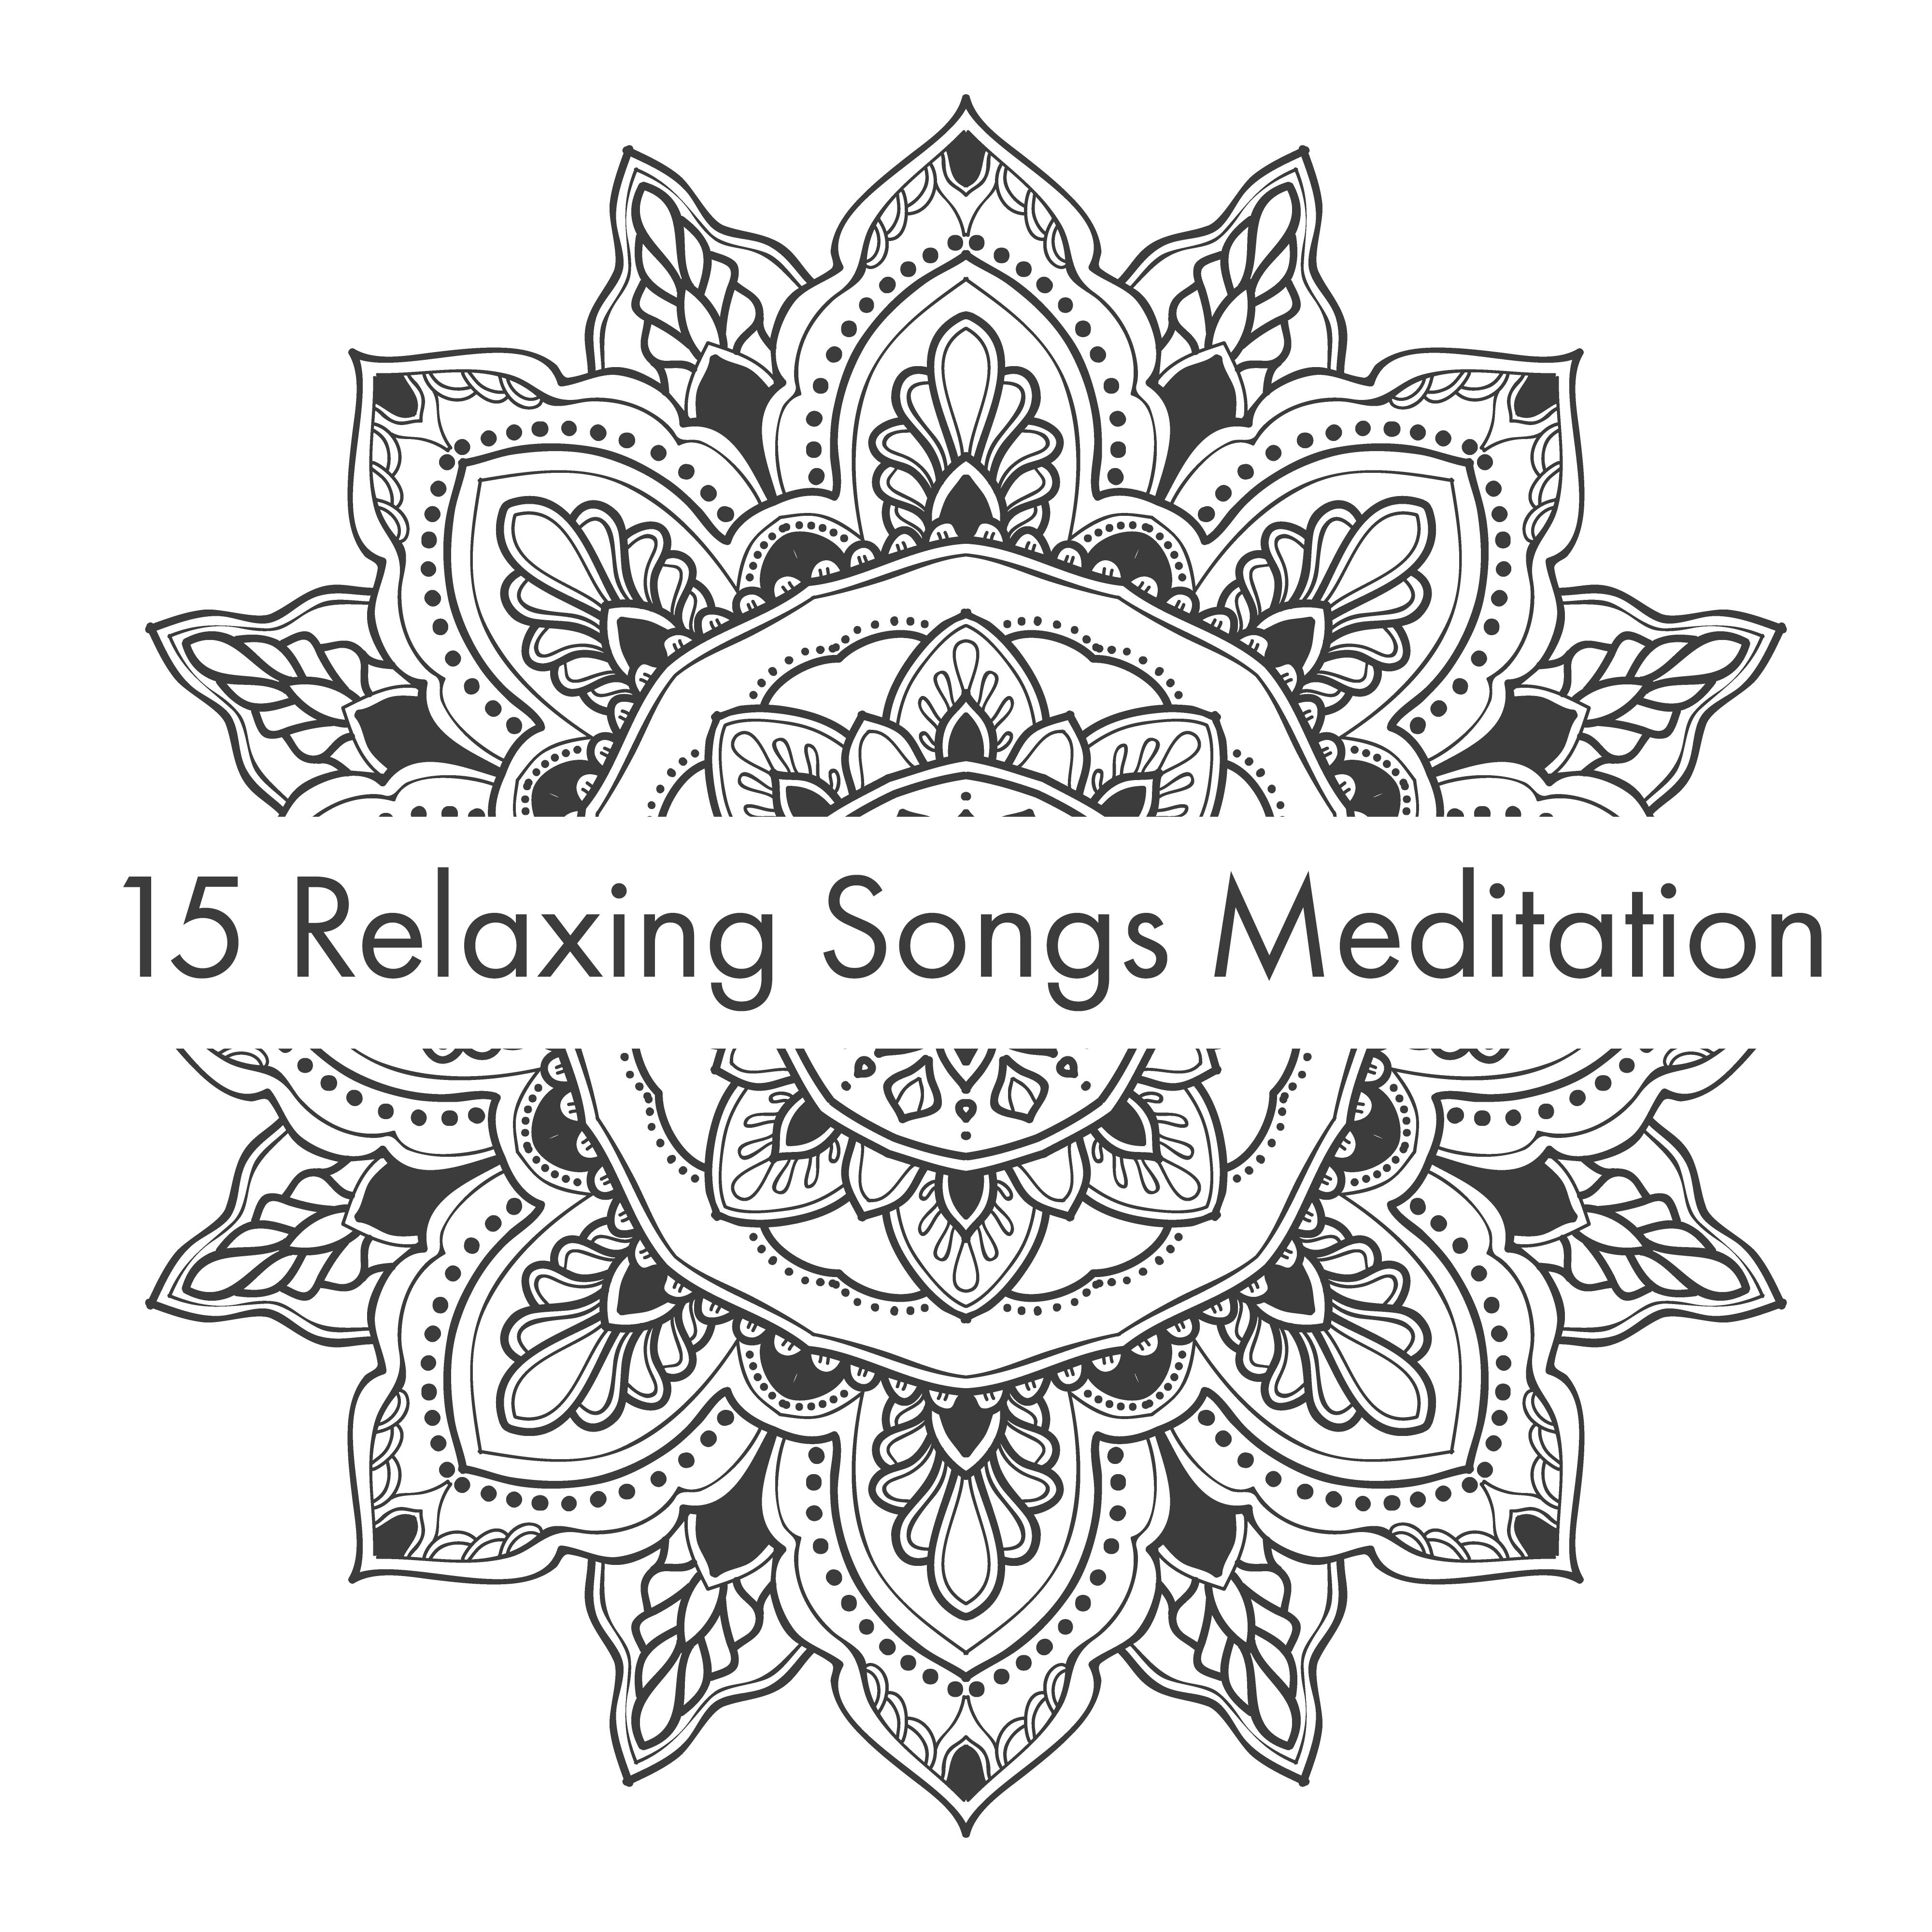 15 Relaxing Songs Meditation  Yoga Training, Helaing Music for Relaxation, Inner Balance, Deep Harmony, Zen Lounge, Yoga Exercises, Reiki Music